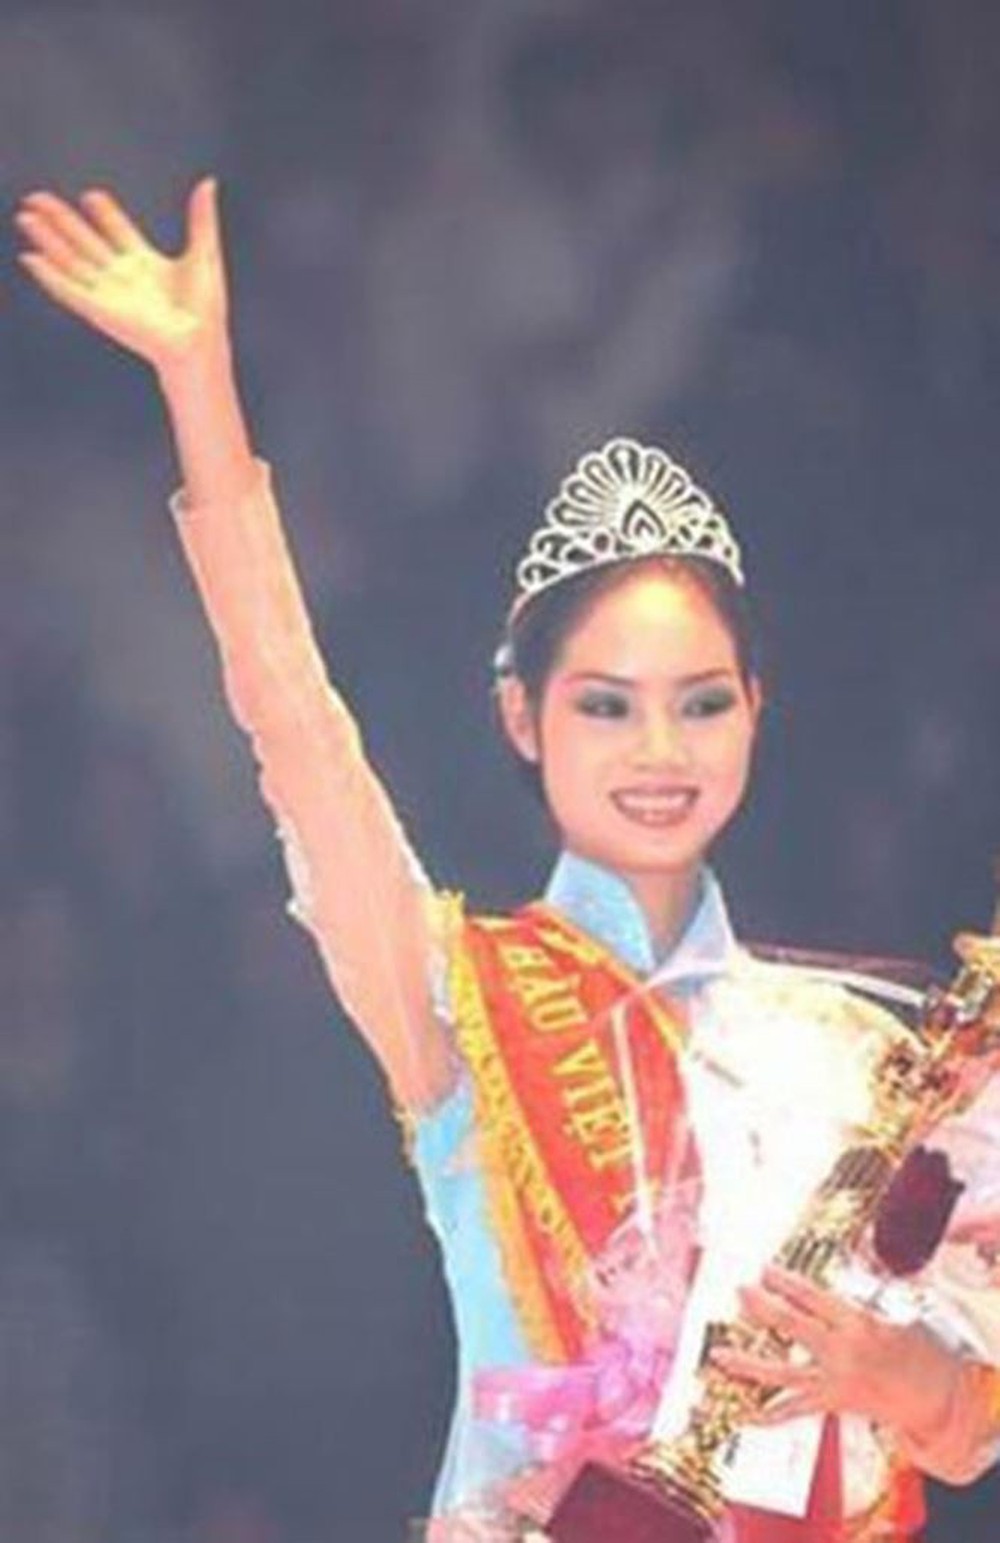 Cuộc sống an phận, sớm rời xa ánh hào quang của Hoa hậu Việt Nam 2002 - Ảnh 1.